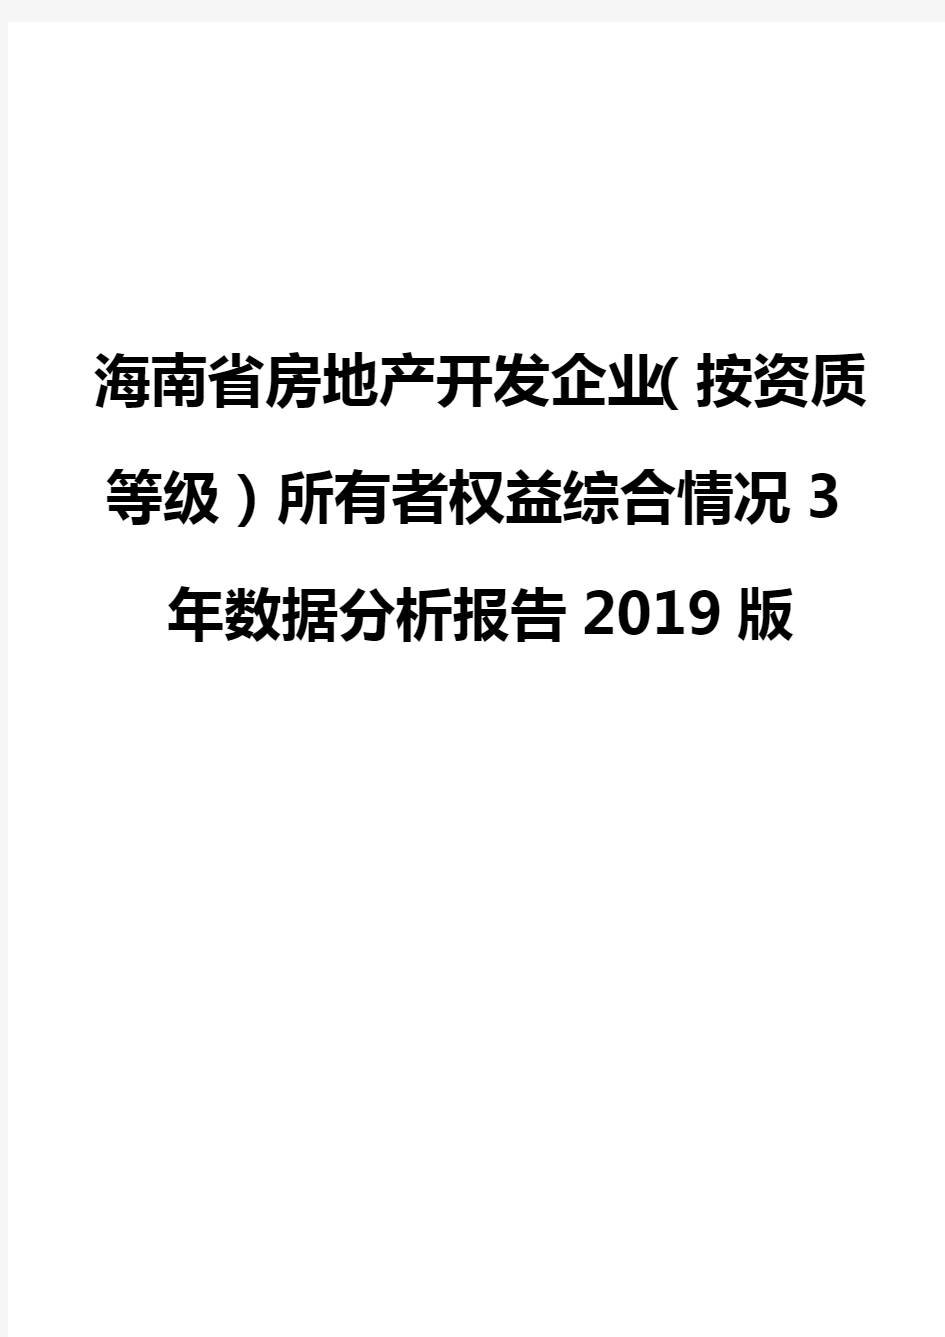 海南省房地产开发企业(按资质等级)所有者权益综合情况3年数据分析报告2019版